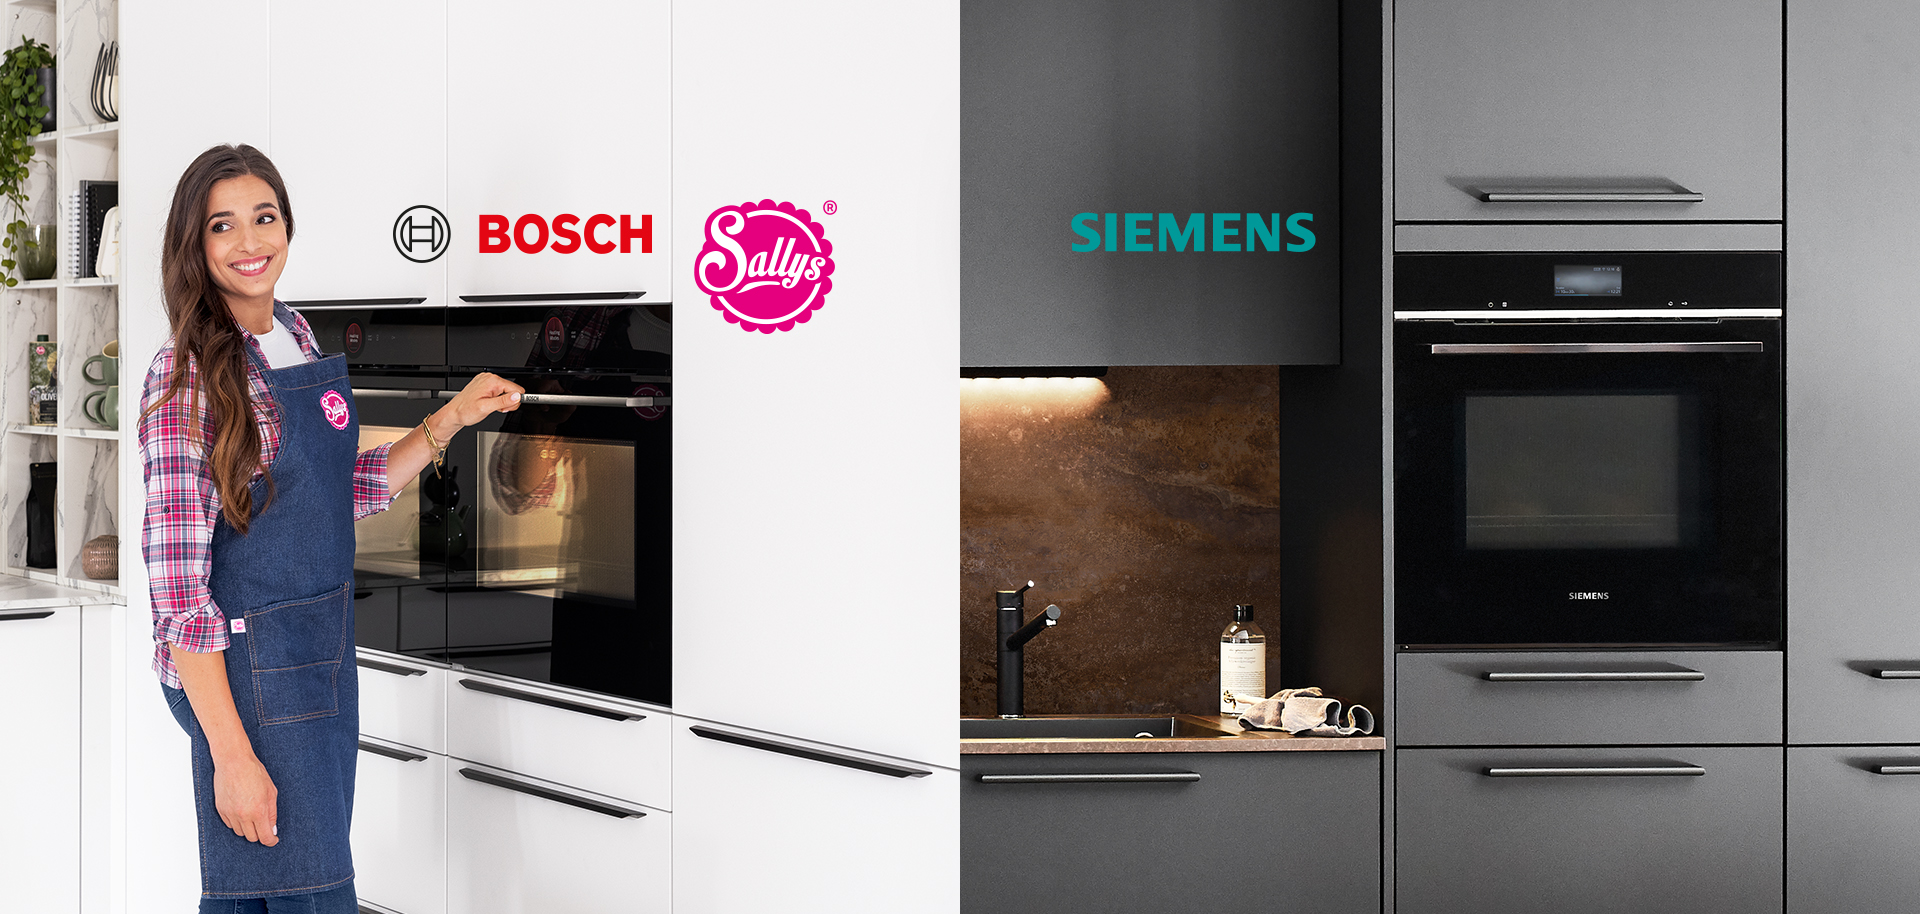 Una persona sorridente indossa un grembiule e presenta un forno Bosch, mentre dall'altro lato viene mostrata una cucina moderna Siemens con elettrodomestici eleganti.